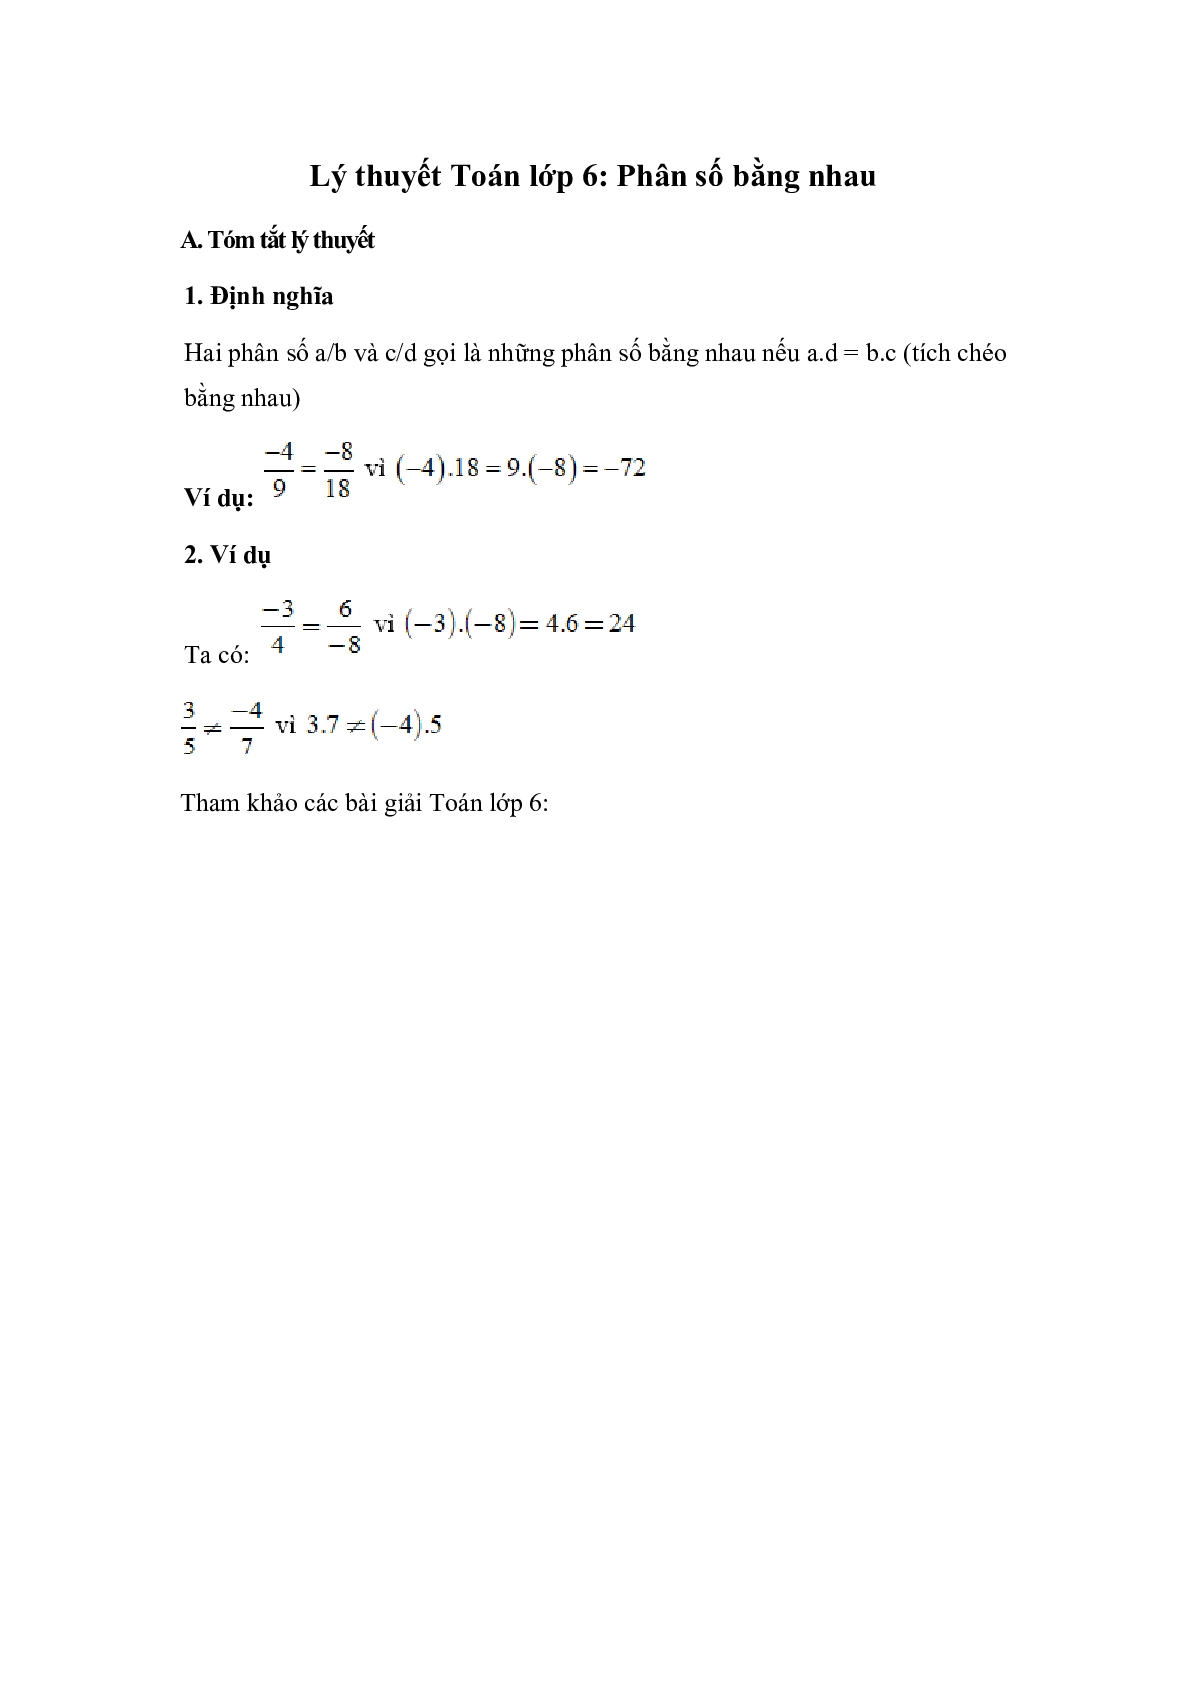 Lý thuyết Toán lớp 6: Phân số bằng nhau (trang 1)